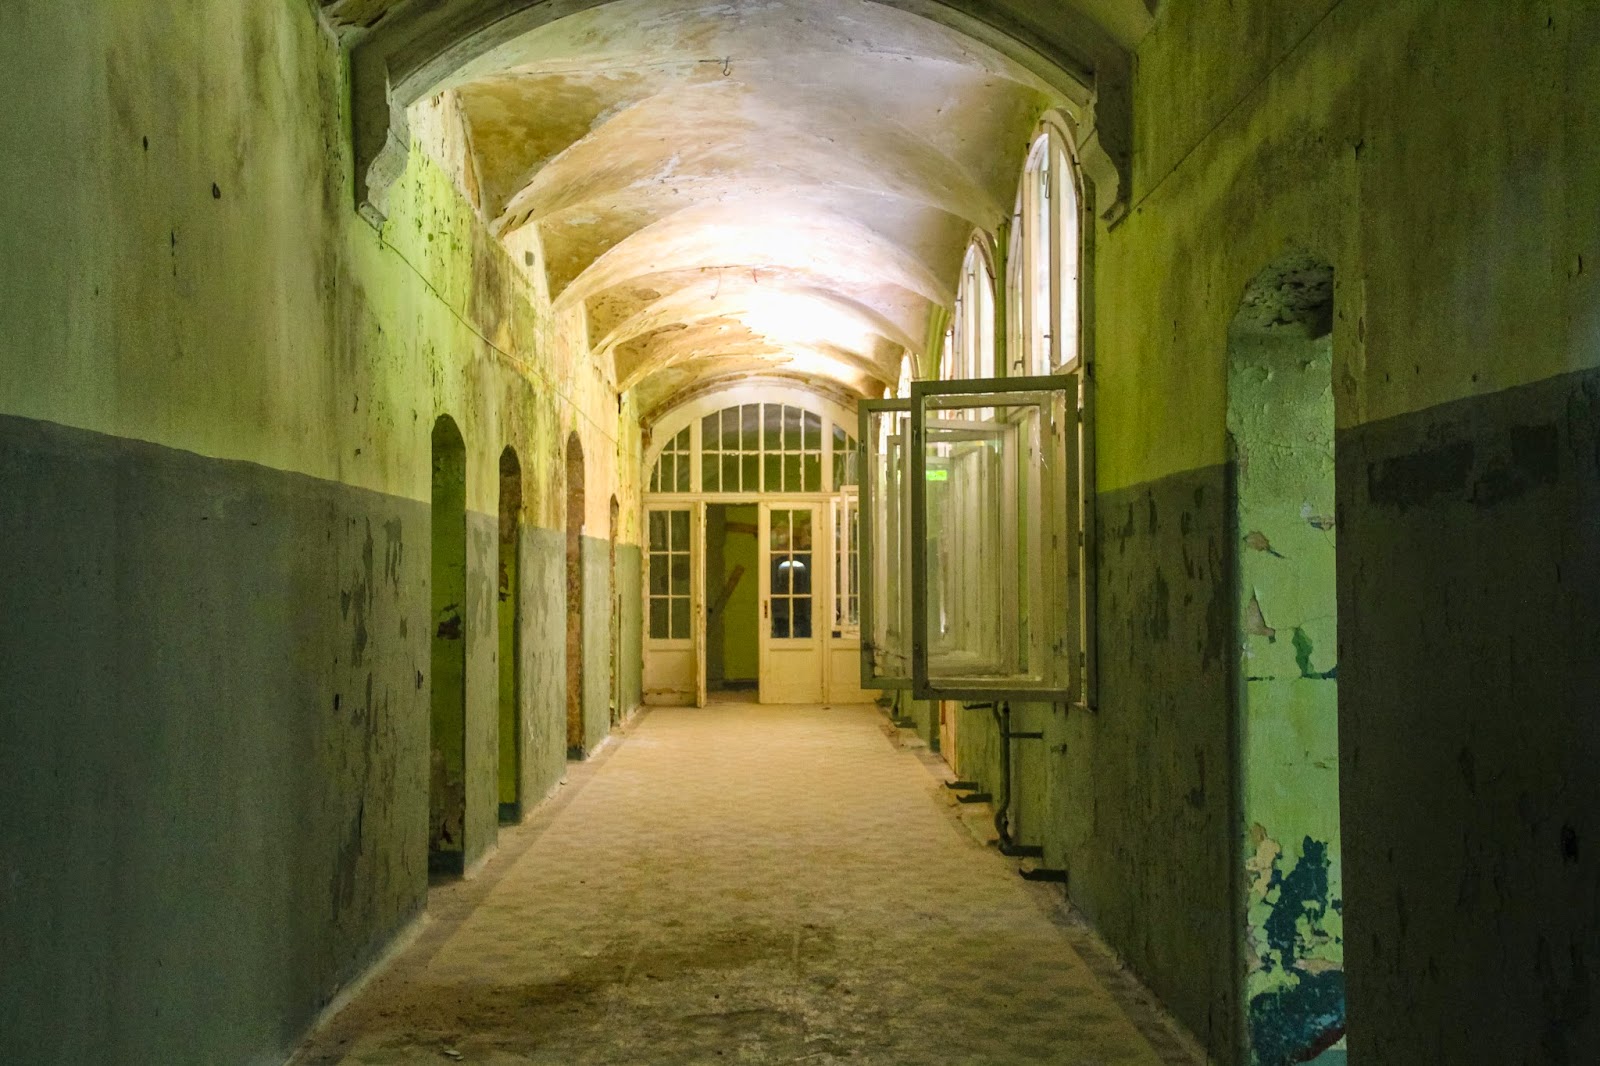 Beelitz-Heilstätten: El hospital alemán donde le salvaron la vida a Hitler